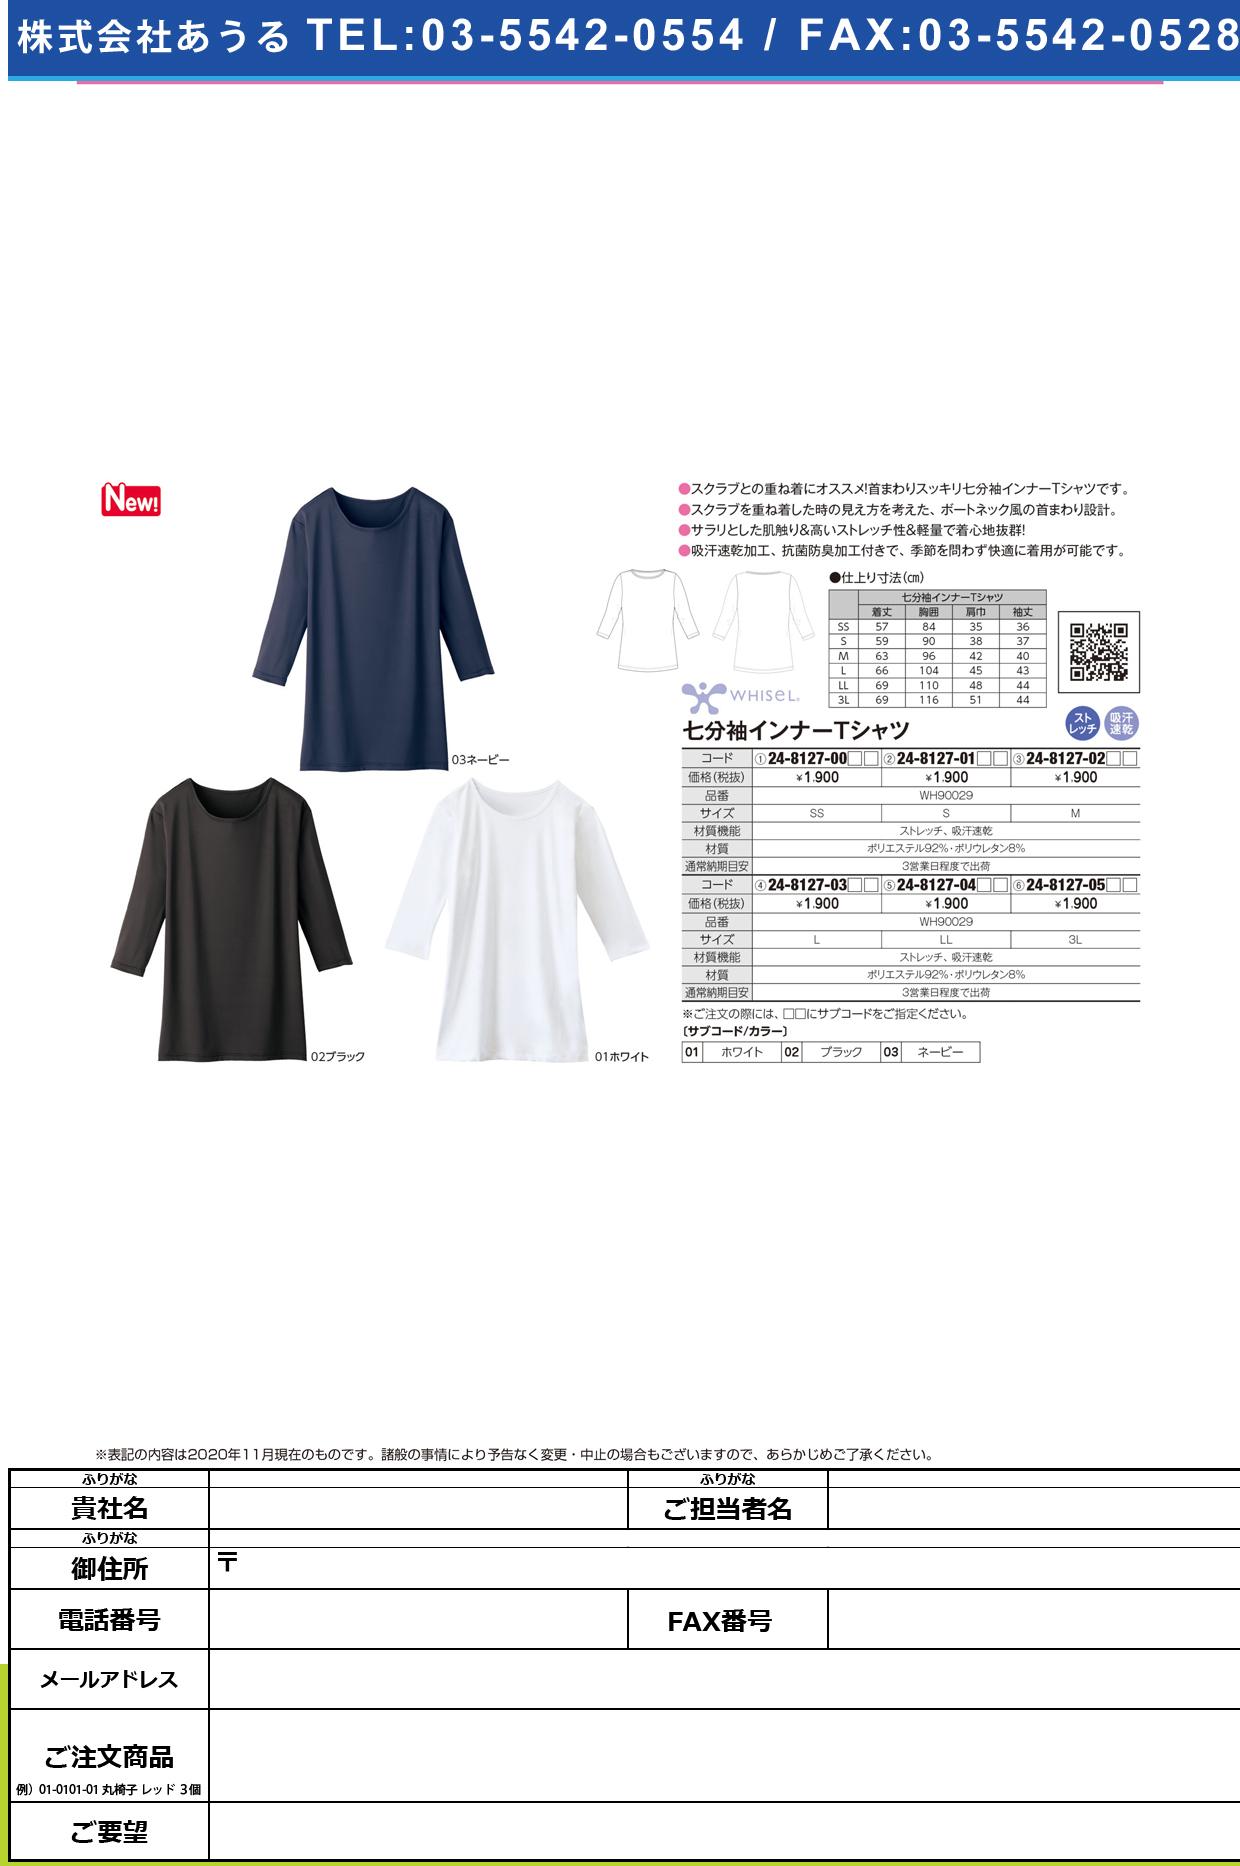 七分袖インナーTシャツ WH90029(M)WH90029(M)ホワイト(24-8127-02-01)【自重堂】(販売単位:1)